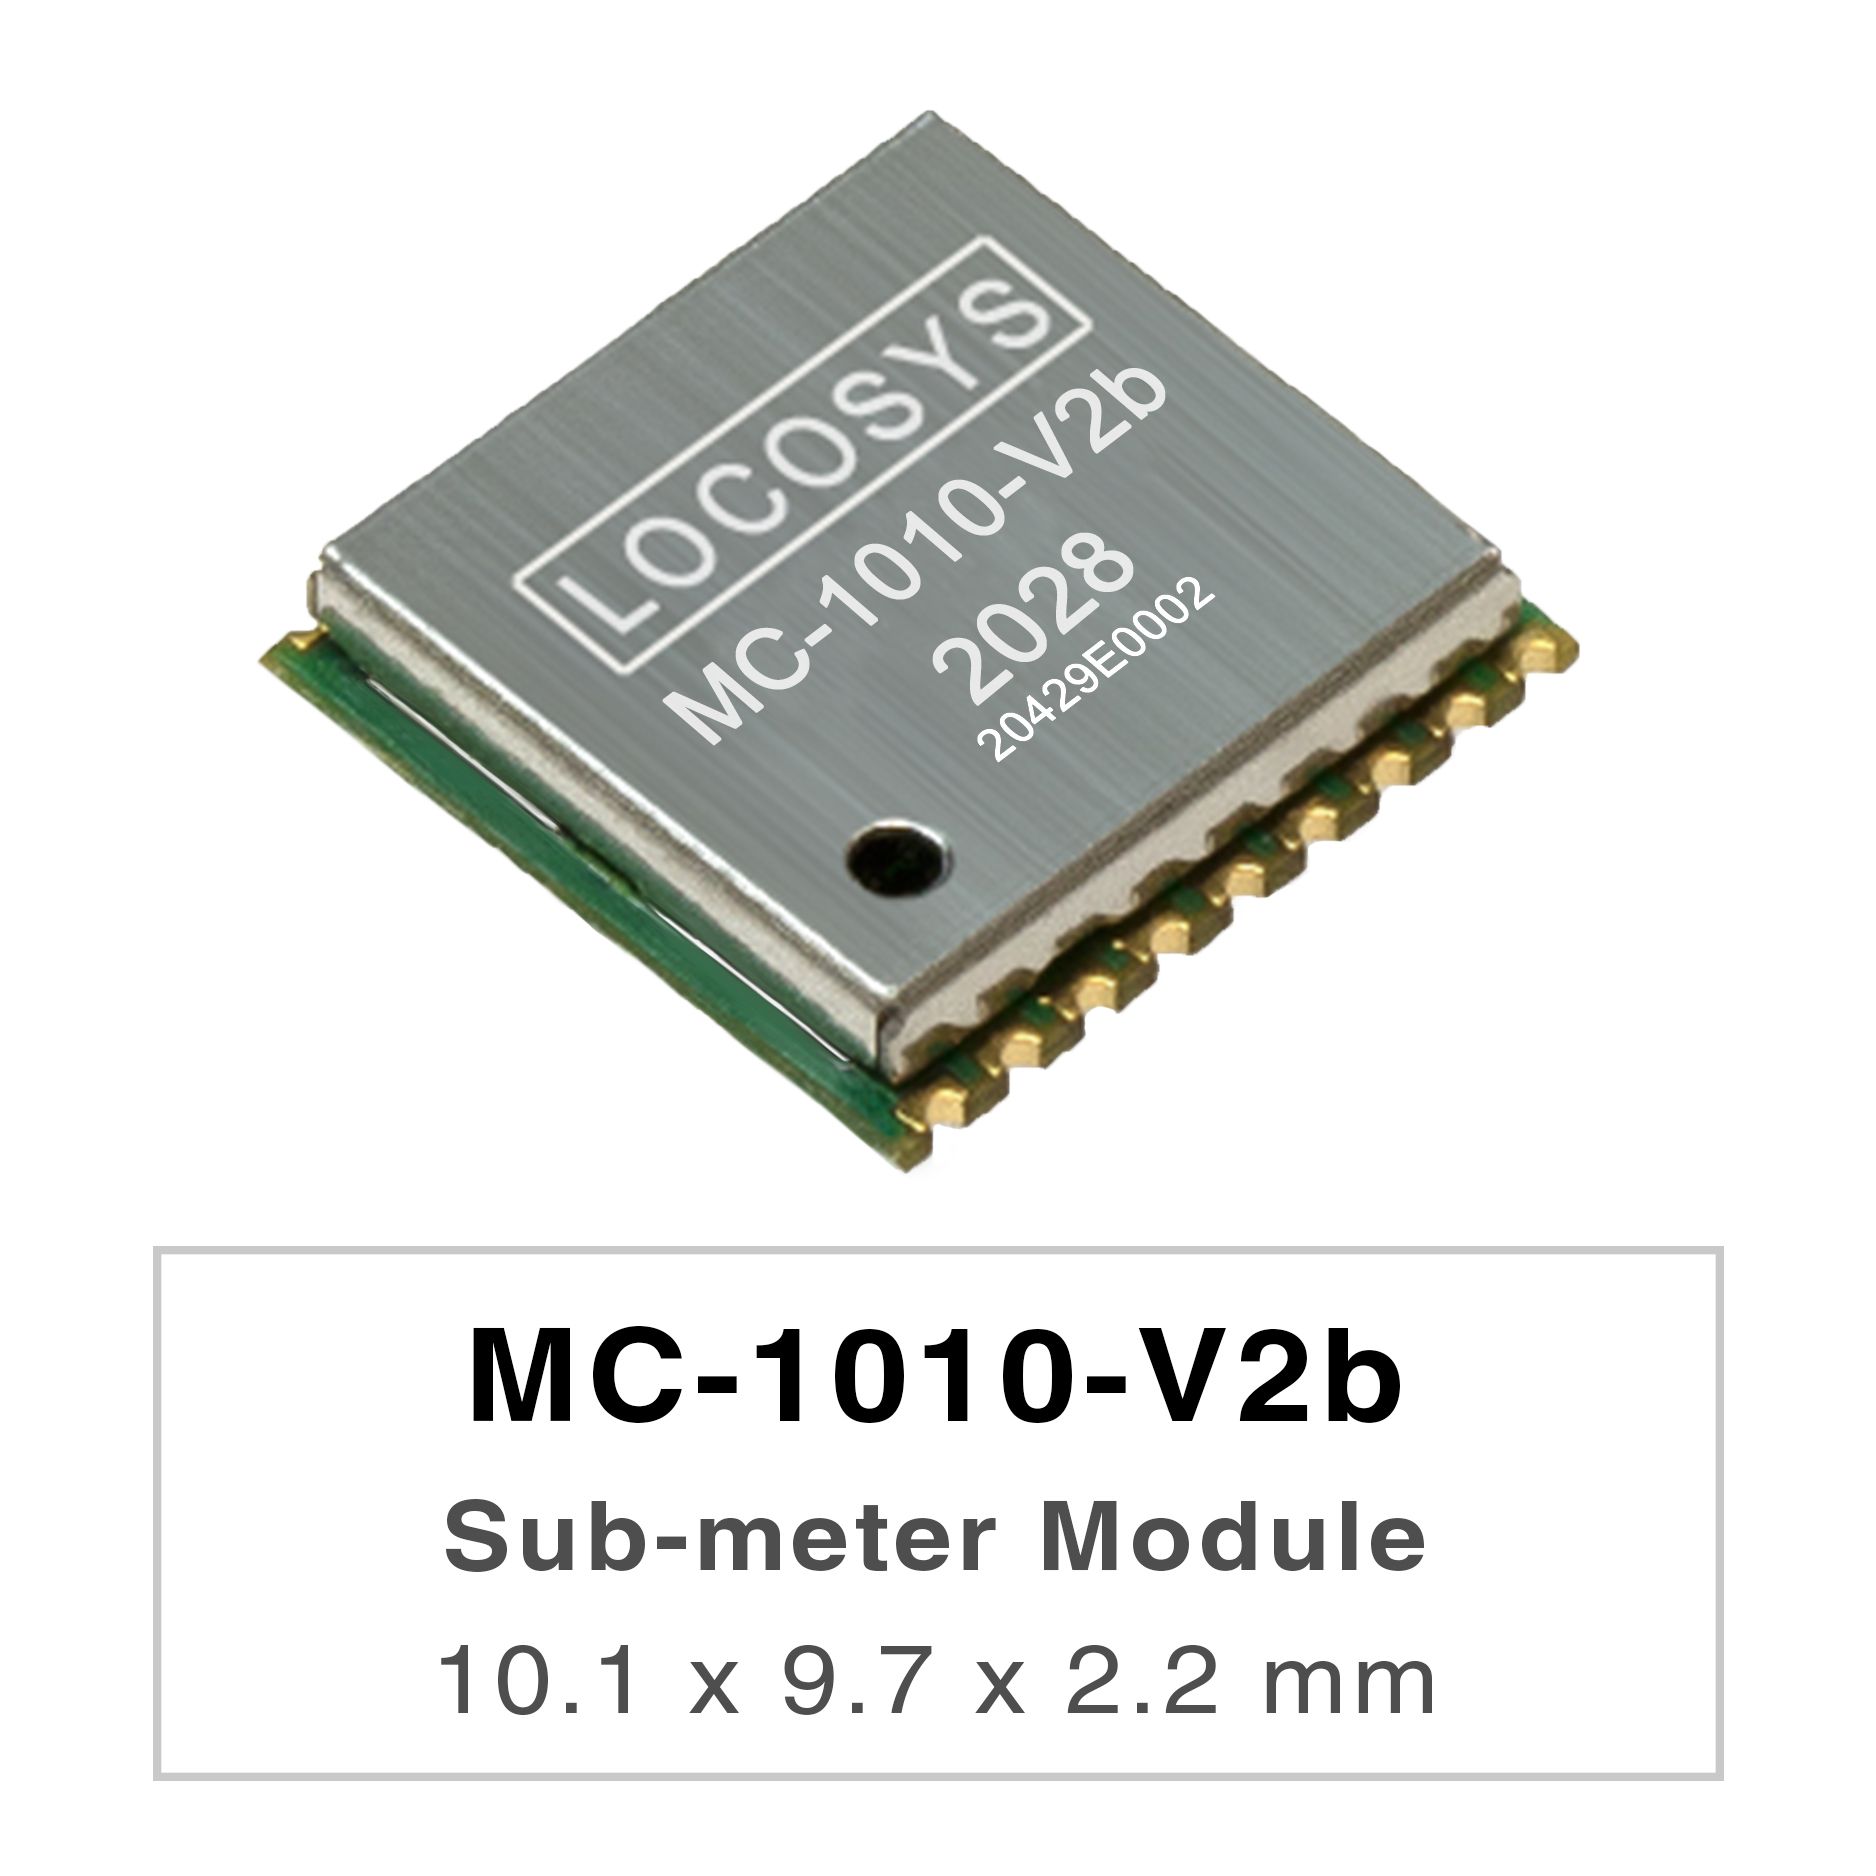 La serie LOCOSYS MC-1010-Vxx son módulos de posicionamiento GNSS de doble banda de alto rendimiento que son
     <br />capaces de rastrear todos los sistemas de navegación civil globales. Adoptan un proceso de 12 nm e integran una
     <br />arquitectura de administración de energía eficiente para funcionar con baja potencia y alta sensibilidad.